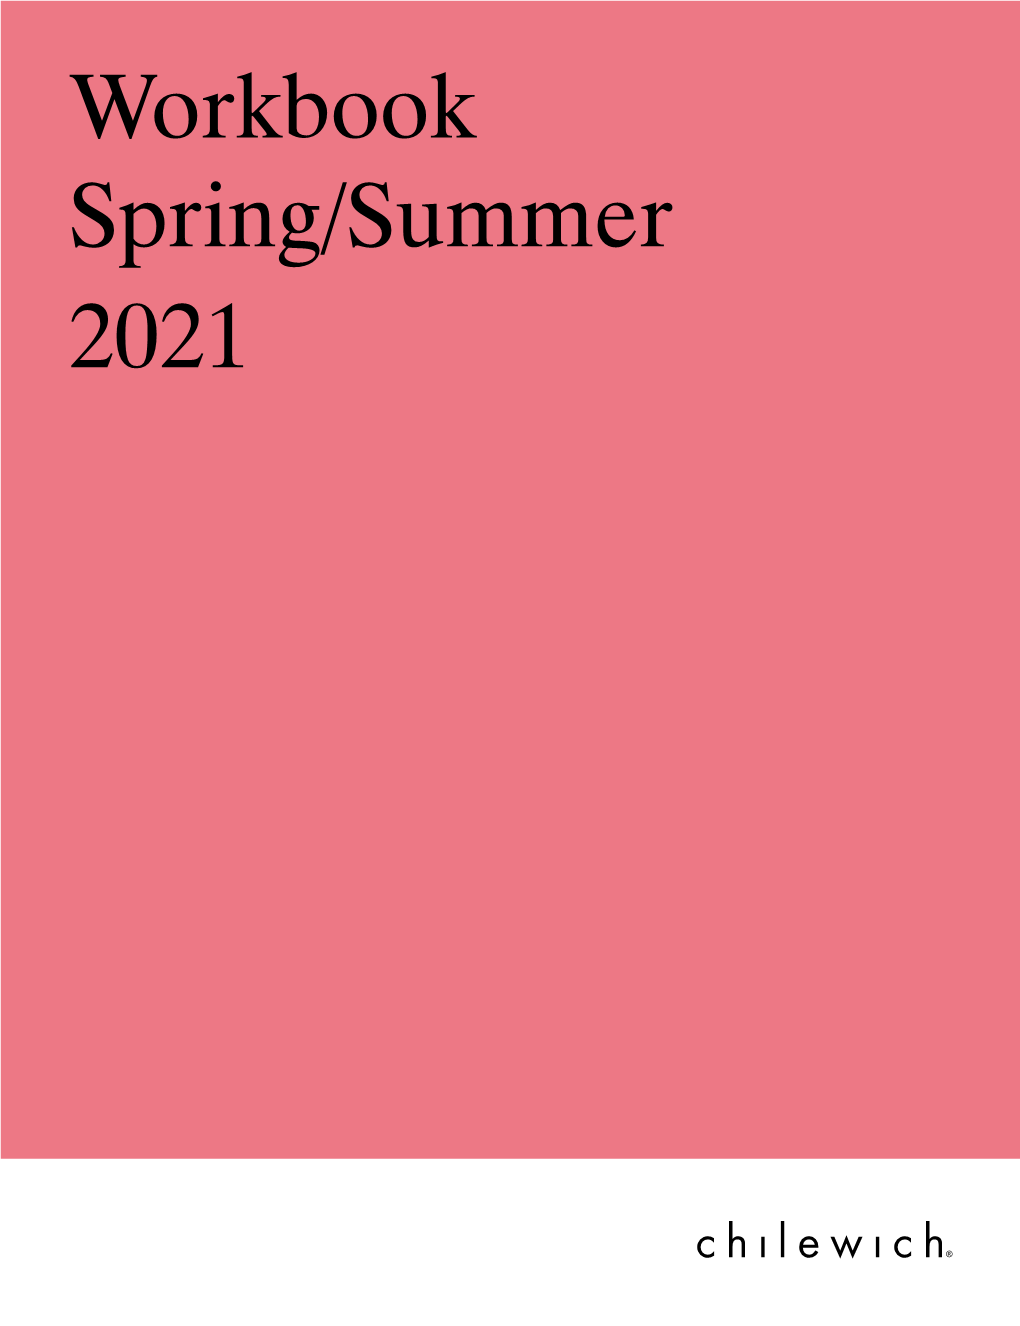 Workbook Spring/Summer 2021 New Styles